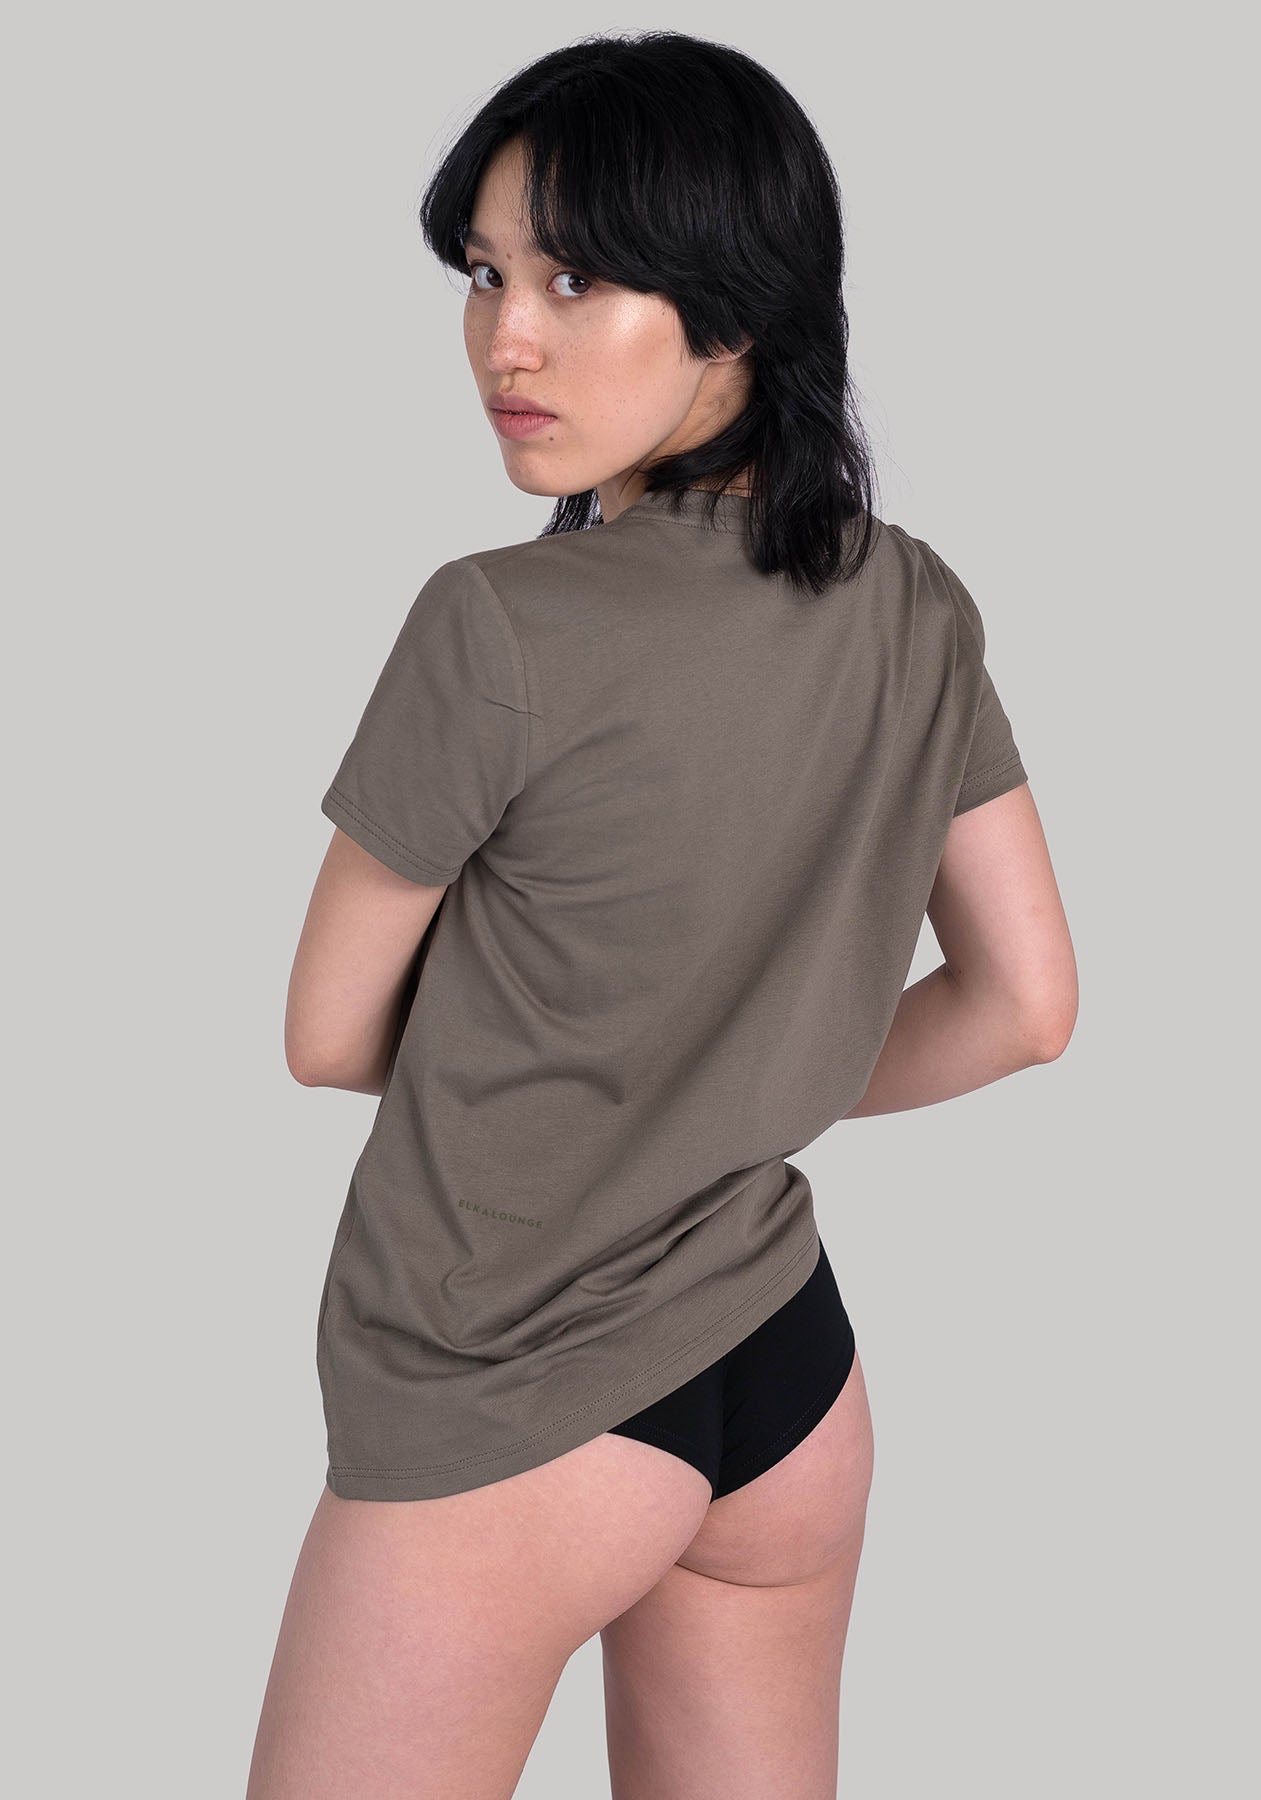 Women koszulka z bawełny organicznej Burnt olive tone-in-tone - ethically made Minimalist - regular